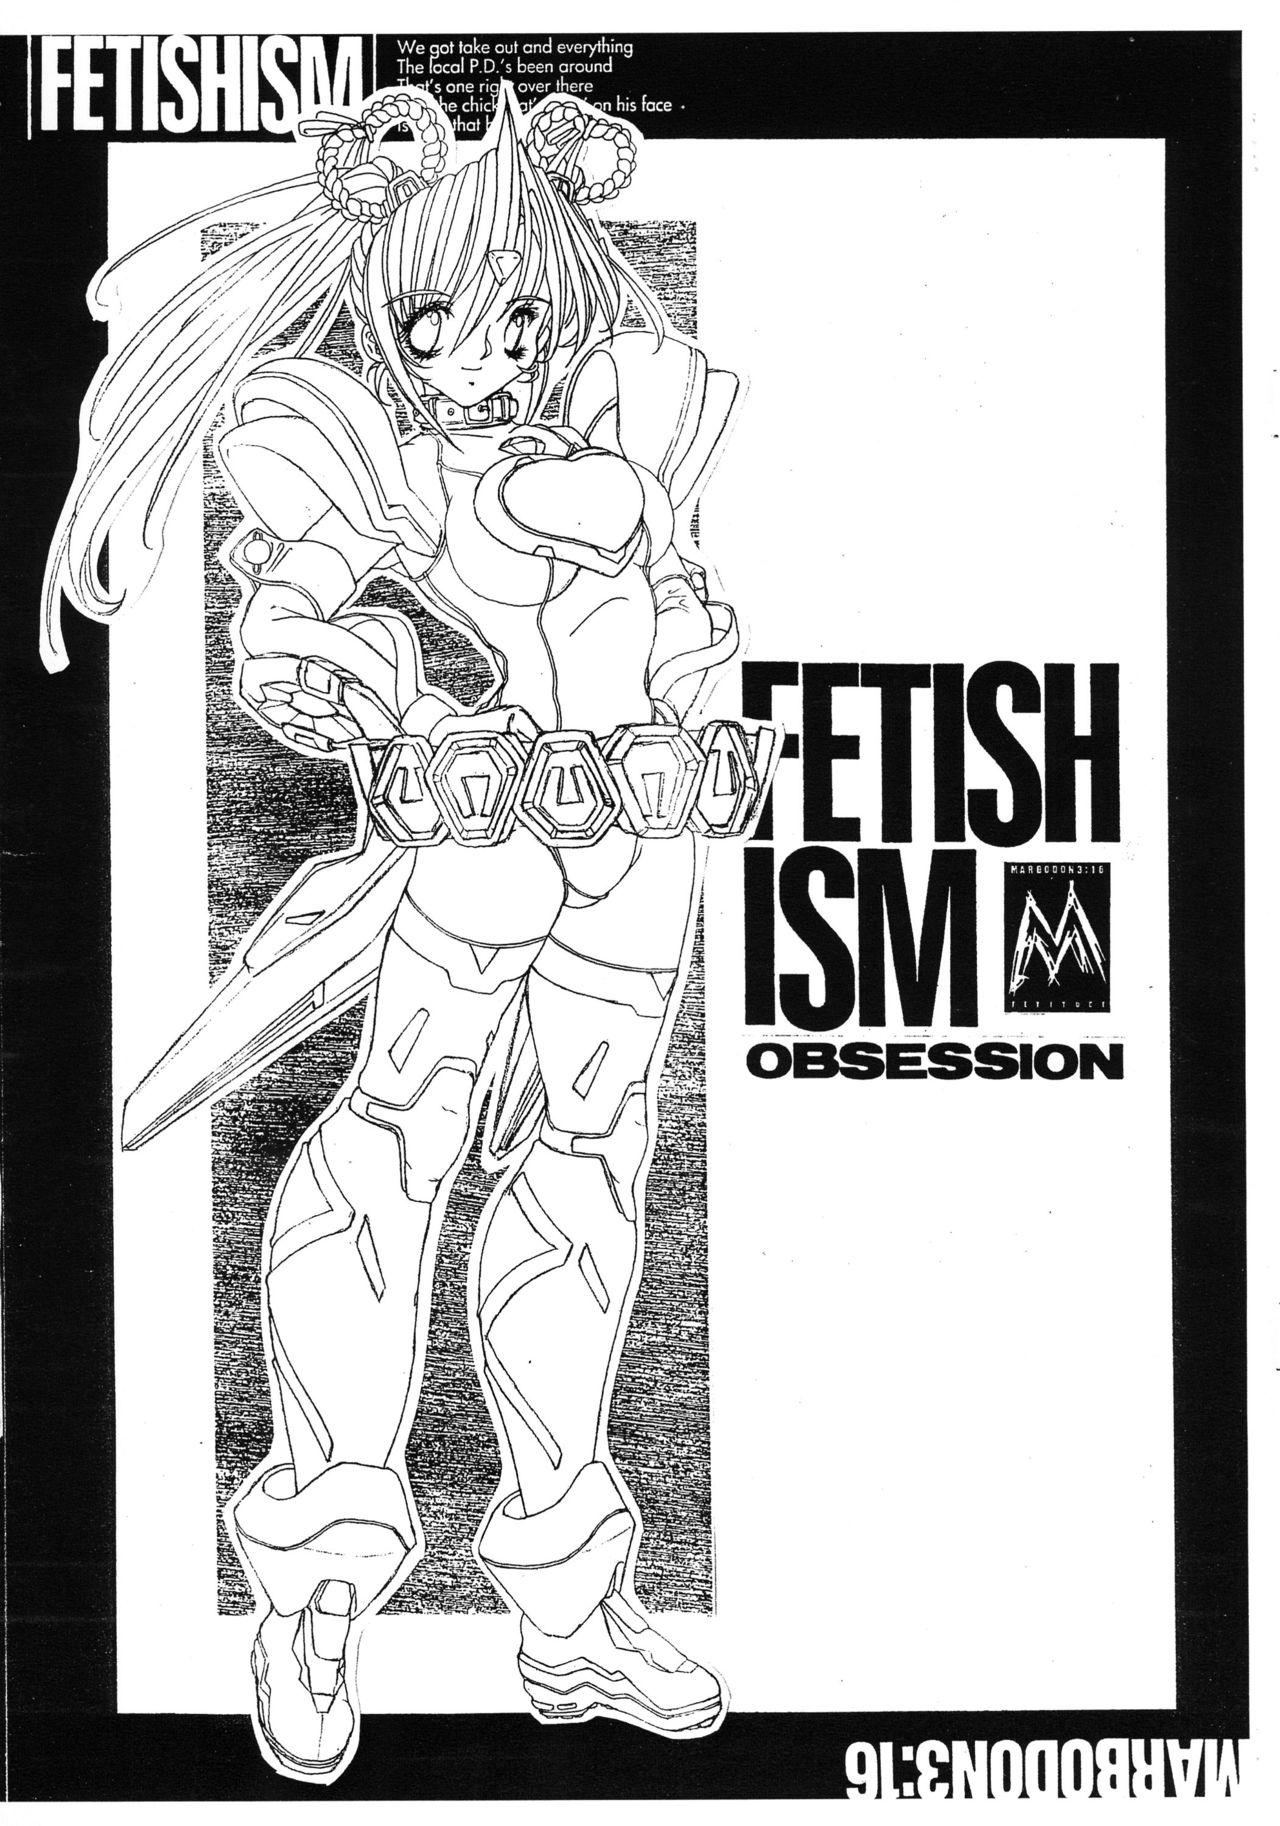 FETISHISM OBSESSION 2 2